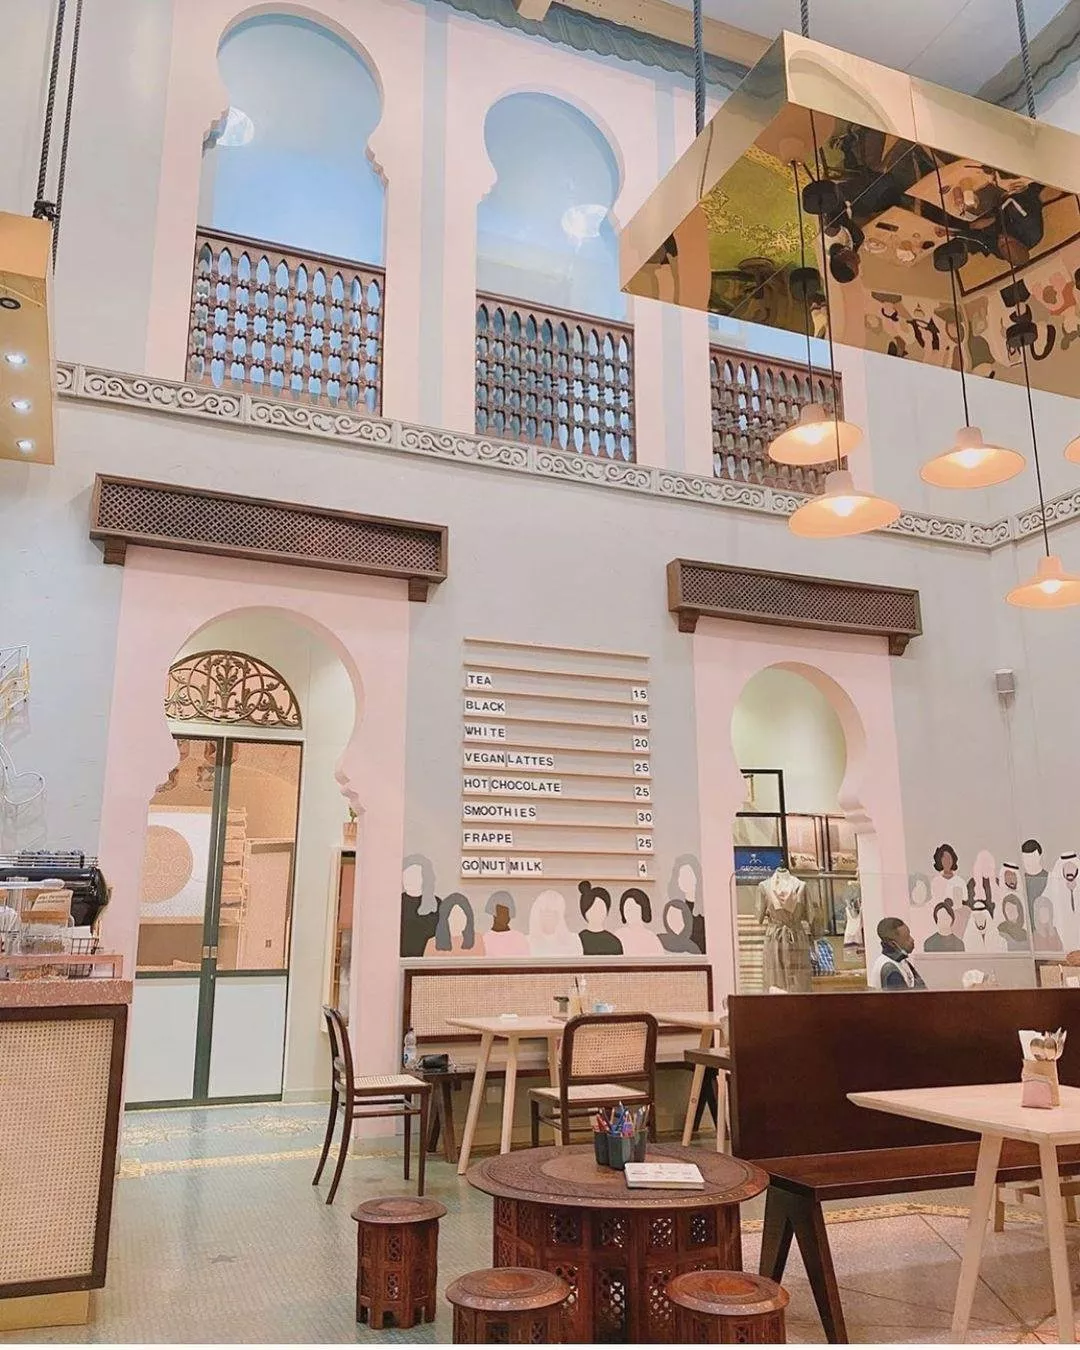 افضل 16 مطعم فطور في الامارات عليكِ زيارته في أقرب وقت